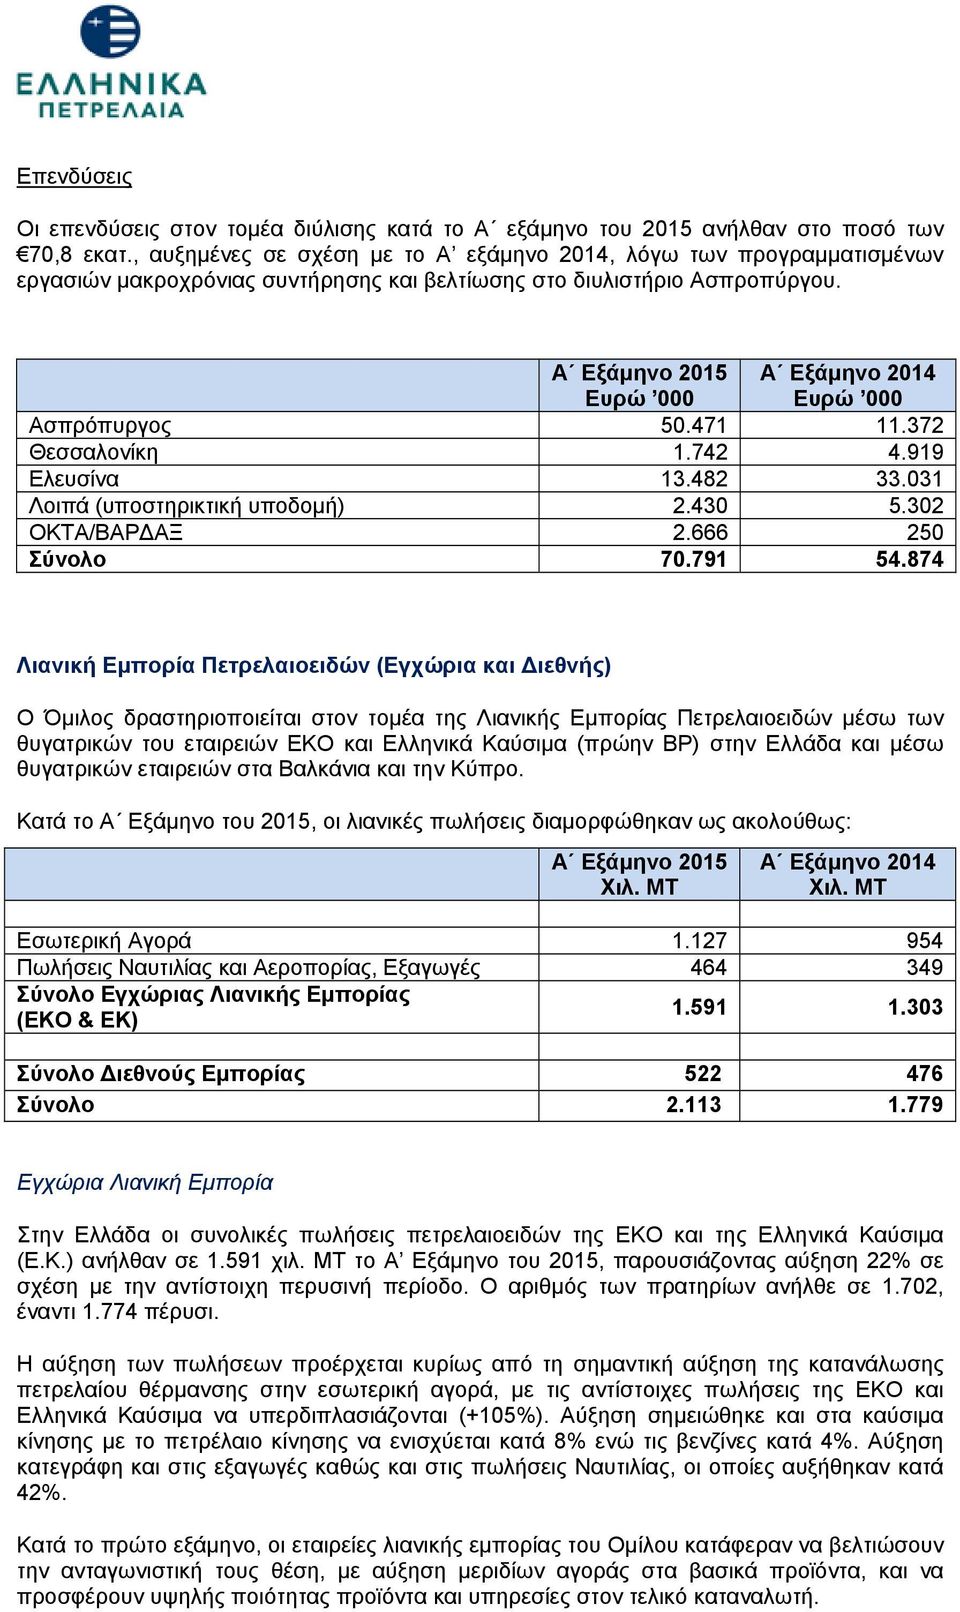 Α Εξάμηνο 2015 Ευρώ 000 Α Εξάμηνο 2014 Ευρώ 000 Ασπρόπυργος 50.471 11.372 Θεσσαλονίκη 1.742 4.919 Ελευσίνα 13.482 33.031 Λοιπά (υποστηρικτική υποδομή) 2.430 5.302 ΟΚΤΑ/ΒΑΡ ΑΞ 2.666 250 Σύνολο 70.